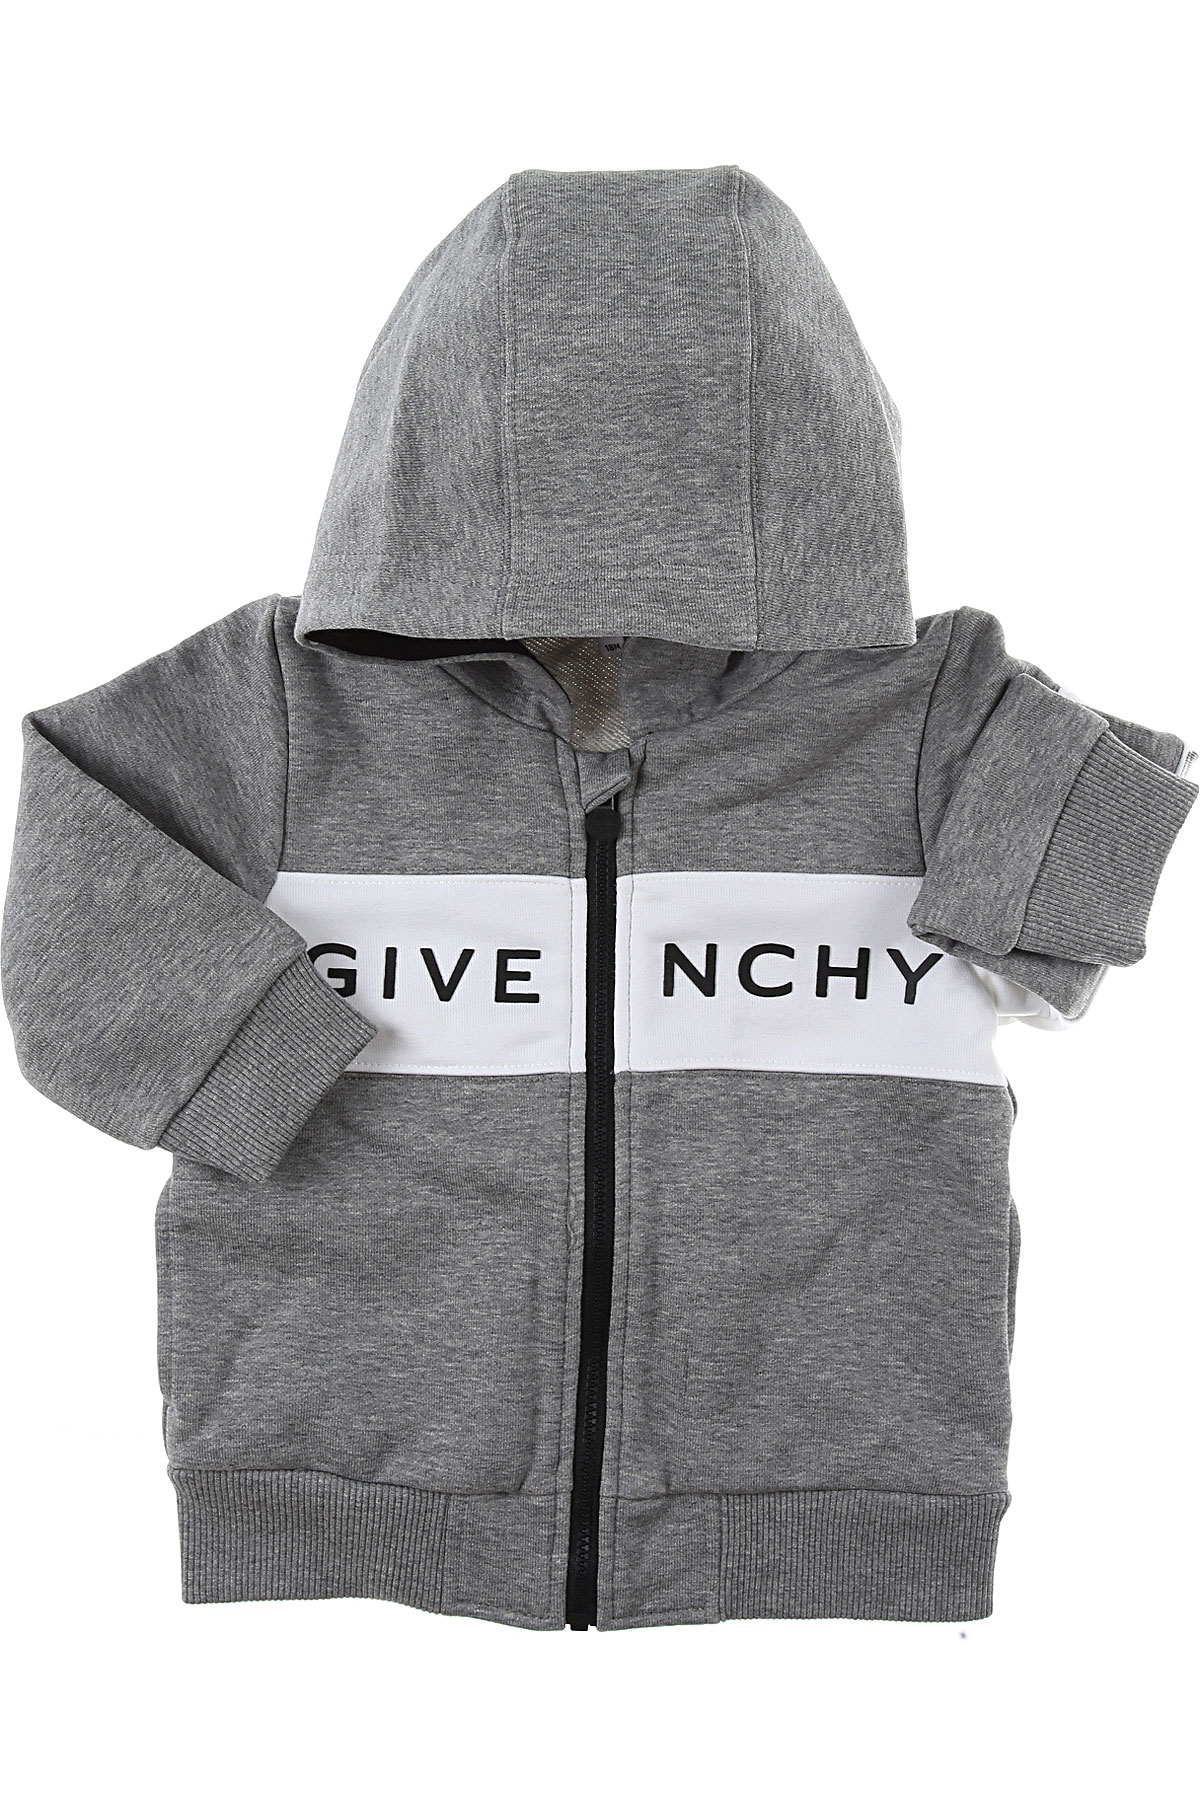 Givenchy Baby Sweatshirt & Kapuzenpullover für Jungen Günstig im Sale, Grau, Baumwolle, 2017, 12 M 18M 2Y 3Y 9M